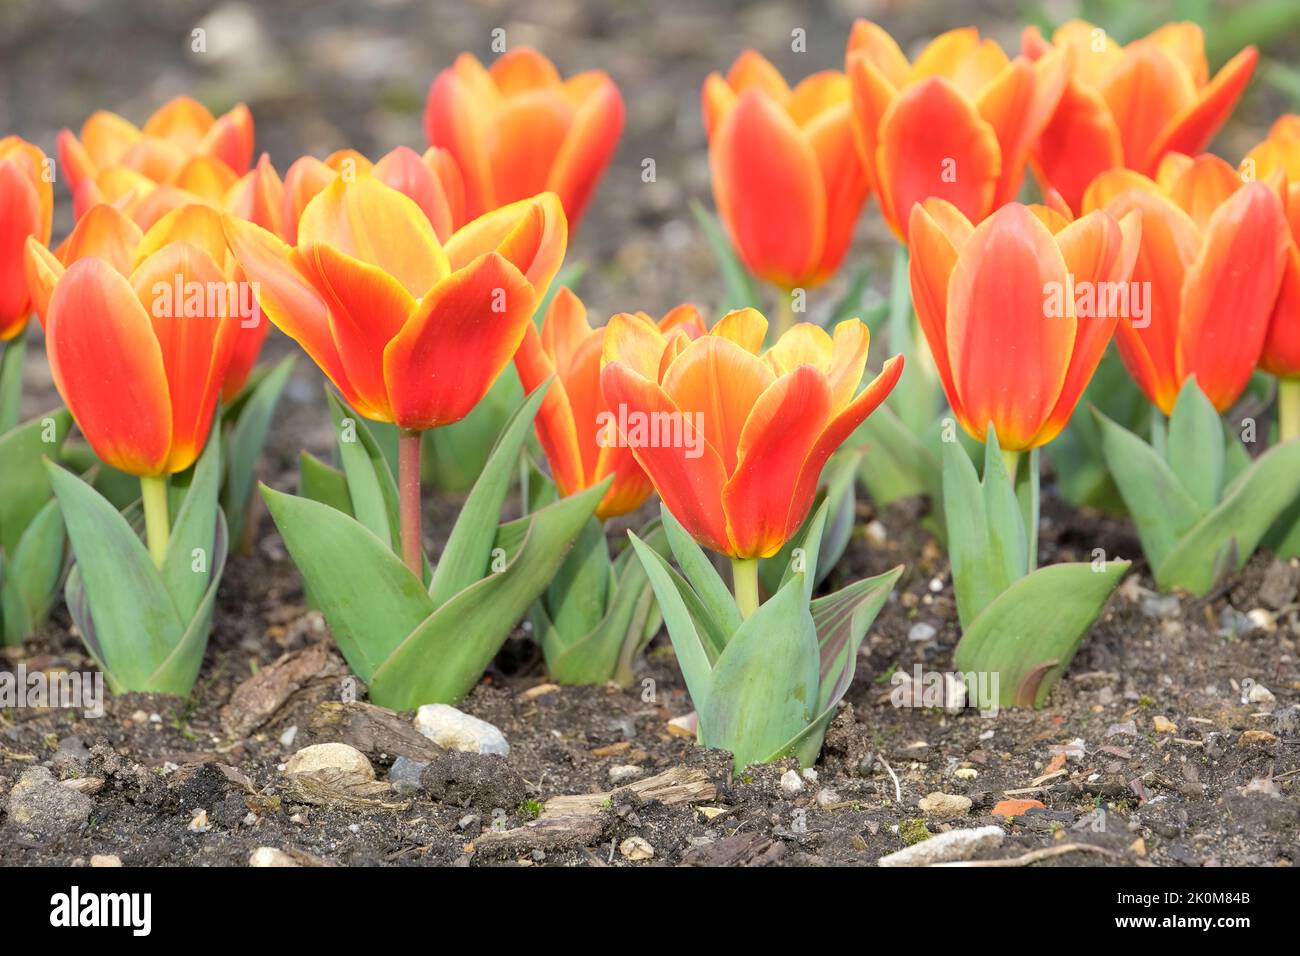 Tulipa 'Love Song', Tulip 'Love Song', Kaufmanniana tulipe 'Love Song'. Tulipe aux feuilles rayées et fleurs orange vif Banque D'Images